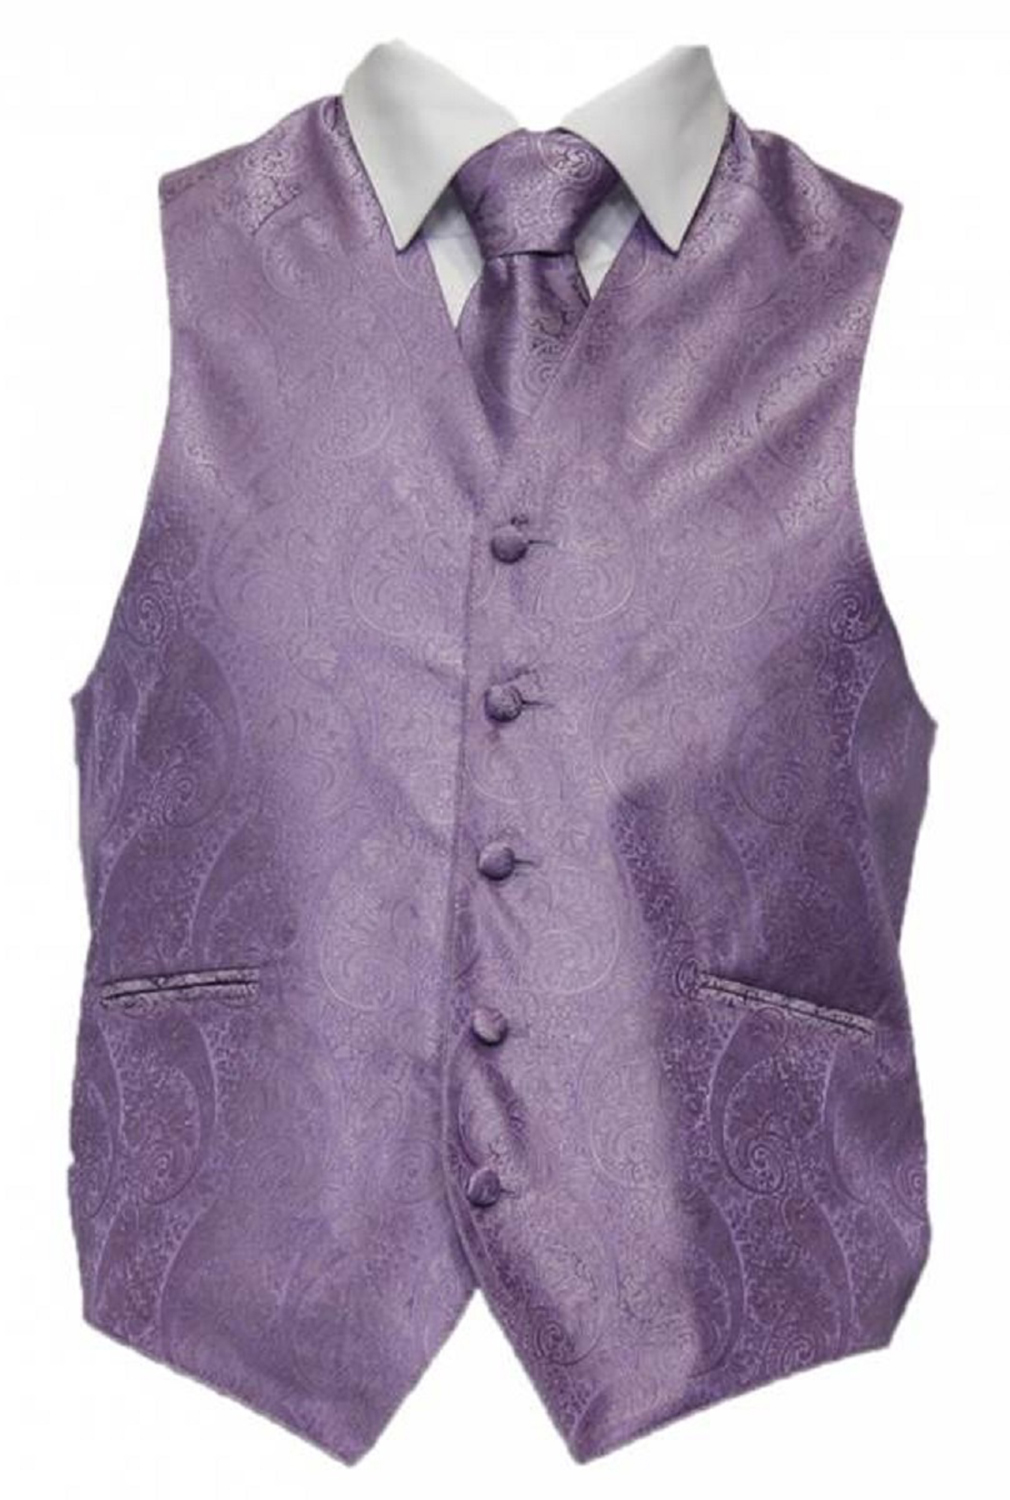 Amanti - Men's 4pc Set Paisley Tuxedo Vest - Lilac, XX-Large